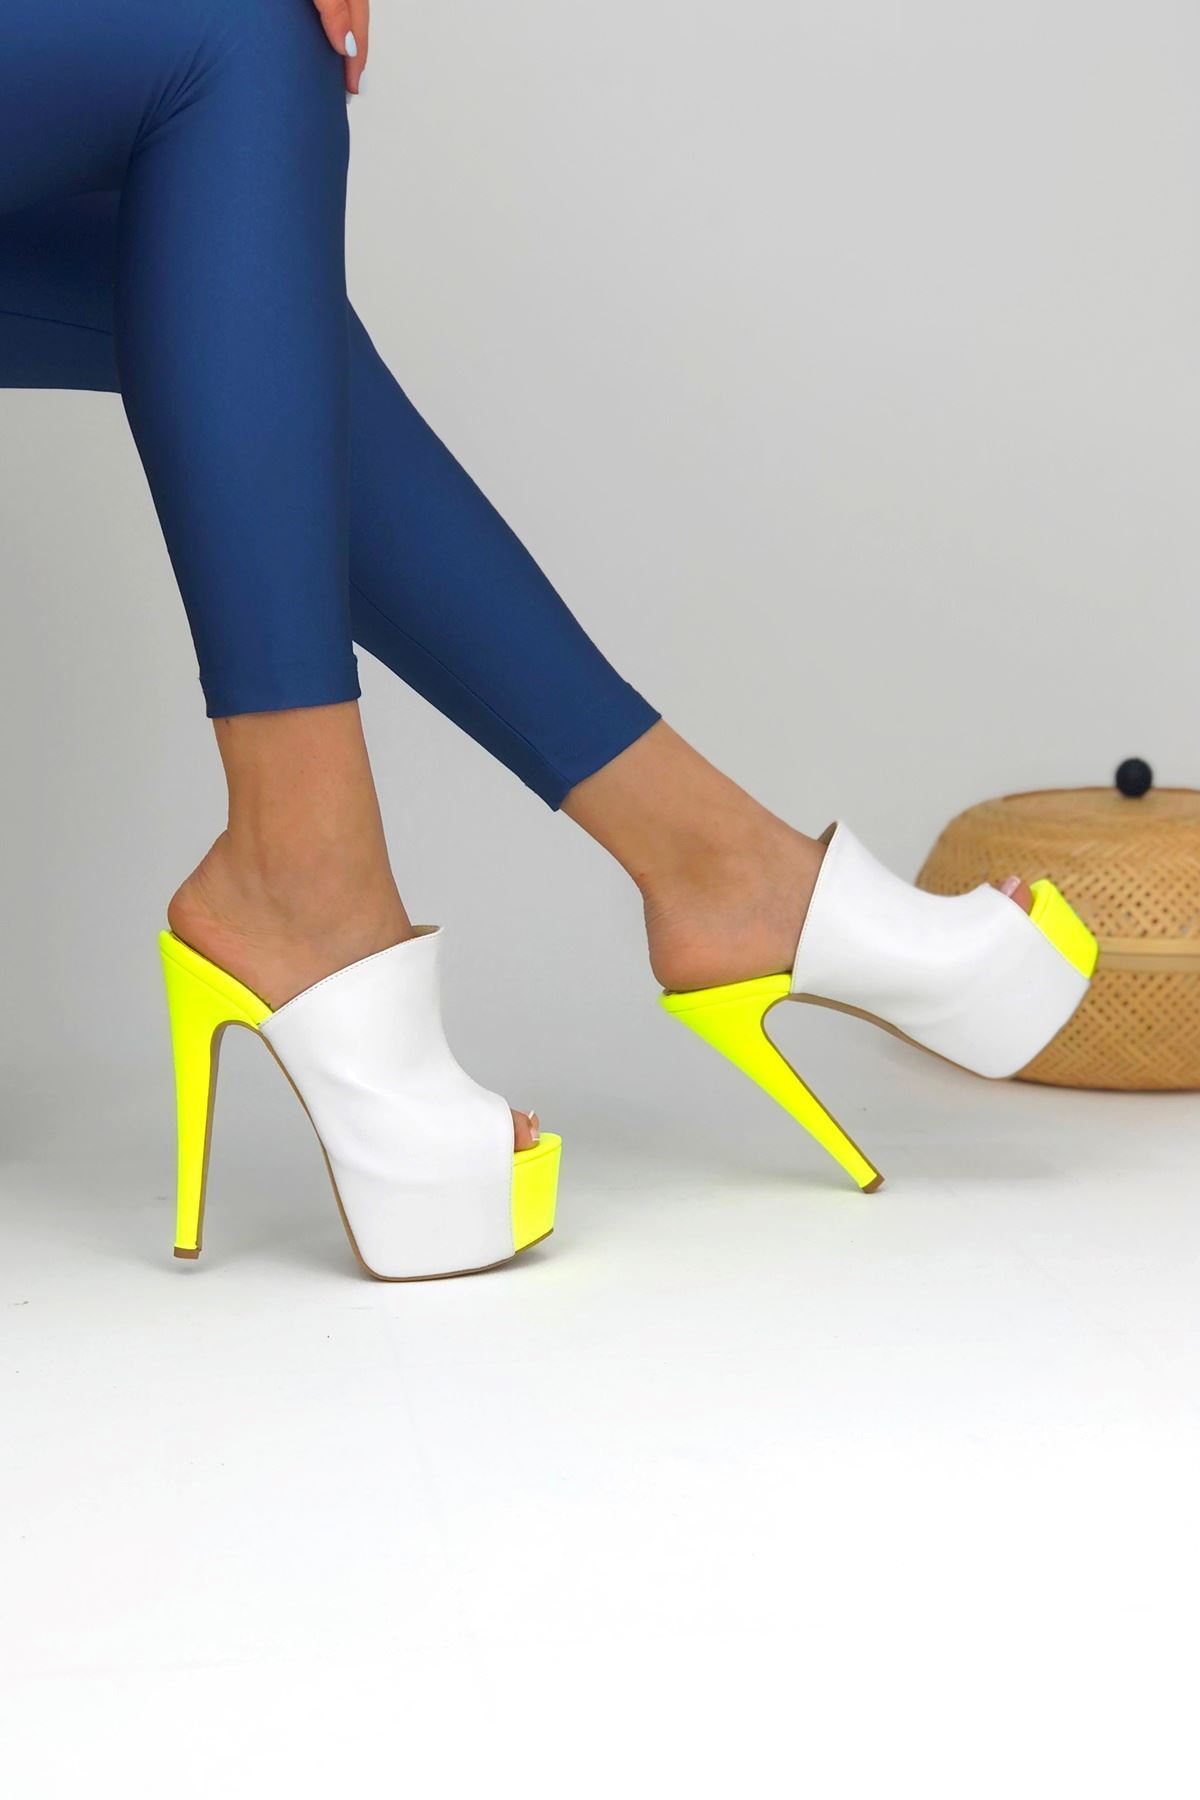 Simsi Beyaz - Sarı Kadın Topuklu Ayakkkabı